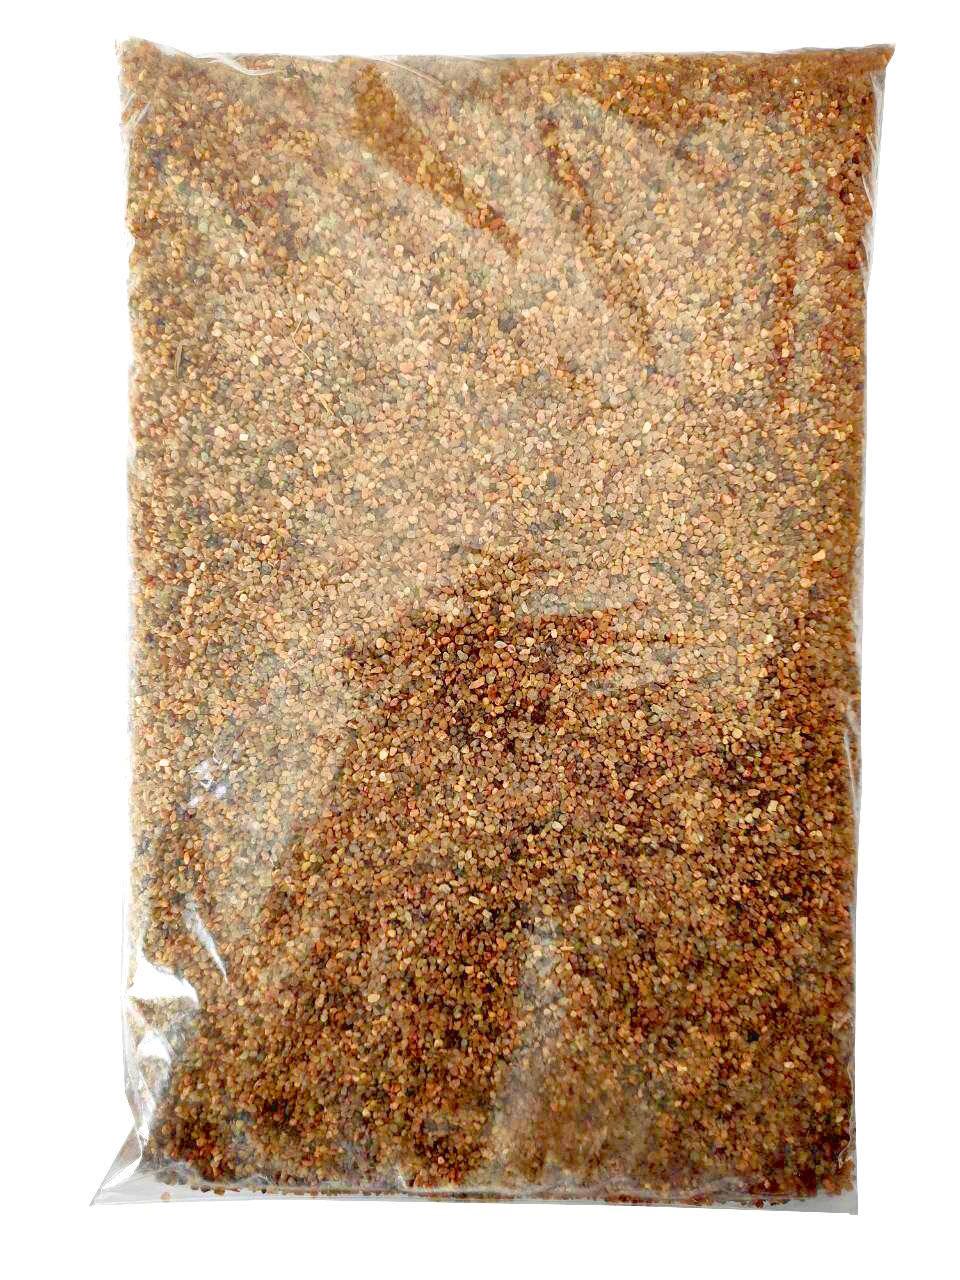 Кварцовий пісок для флораріуму (жовто-коричневий) 1.0-2.0 мм, 2 кг